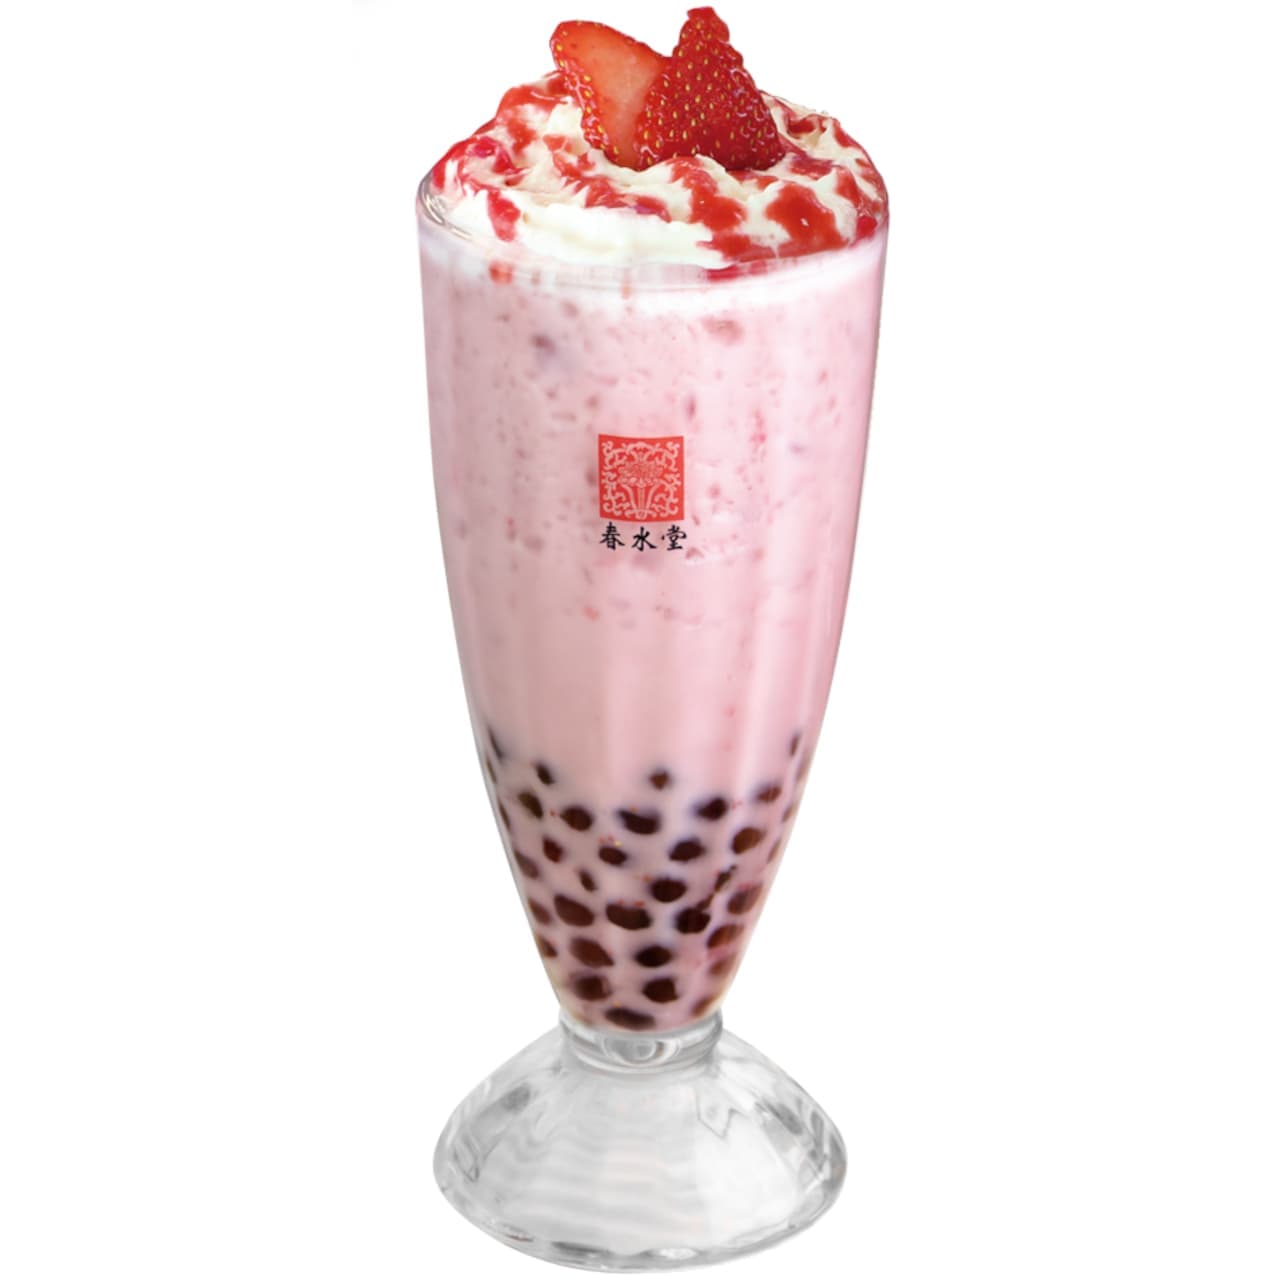 Chun Shui Tang "Tapioca Strawberry Milk Tea